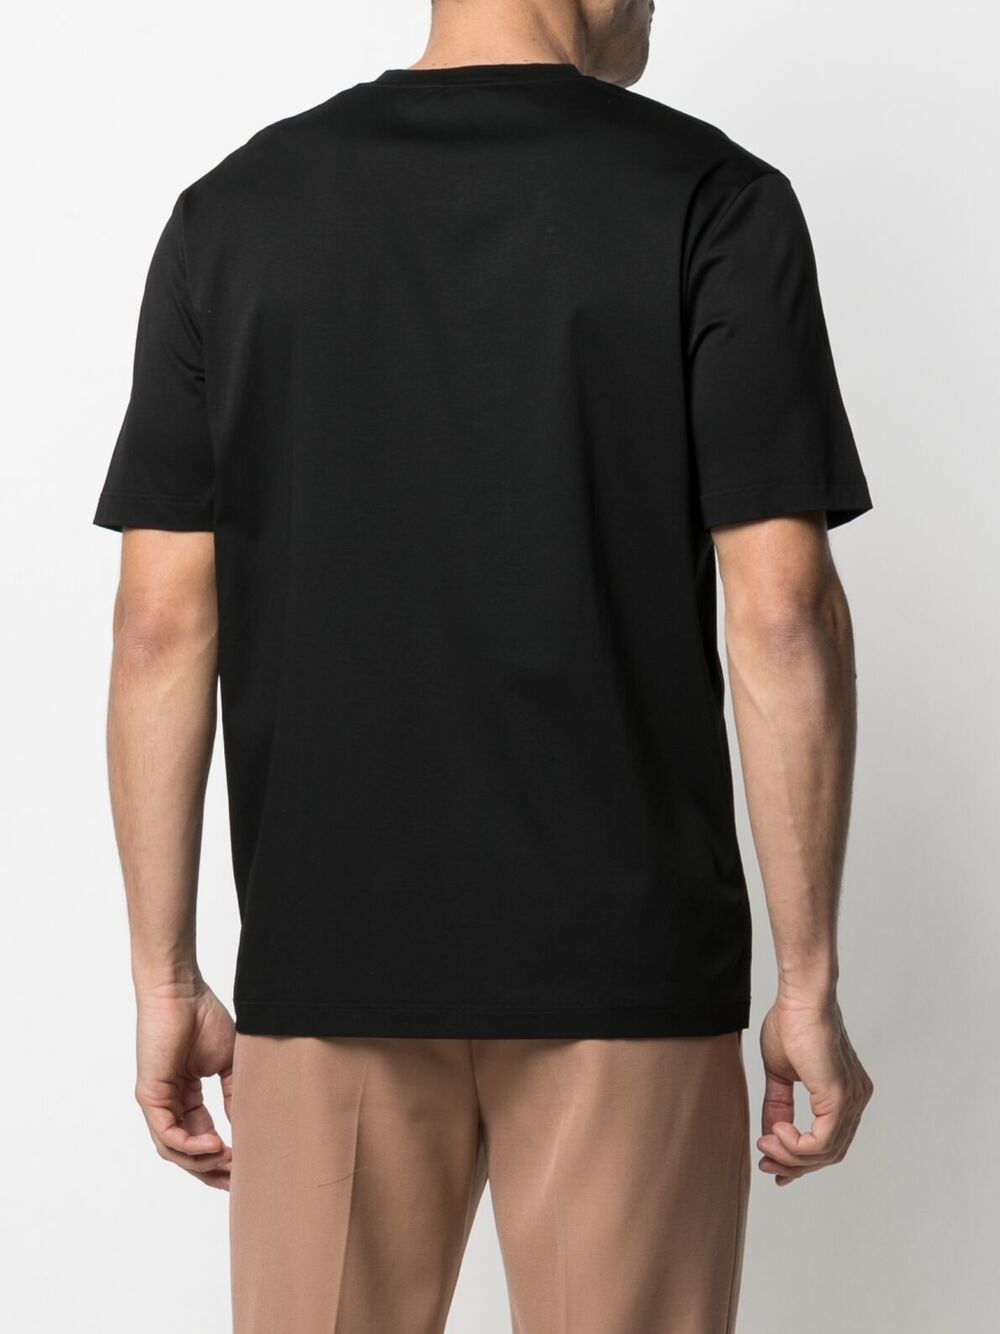 фото Jil sander футболка с короткими рукавами